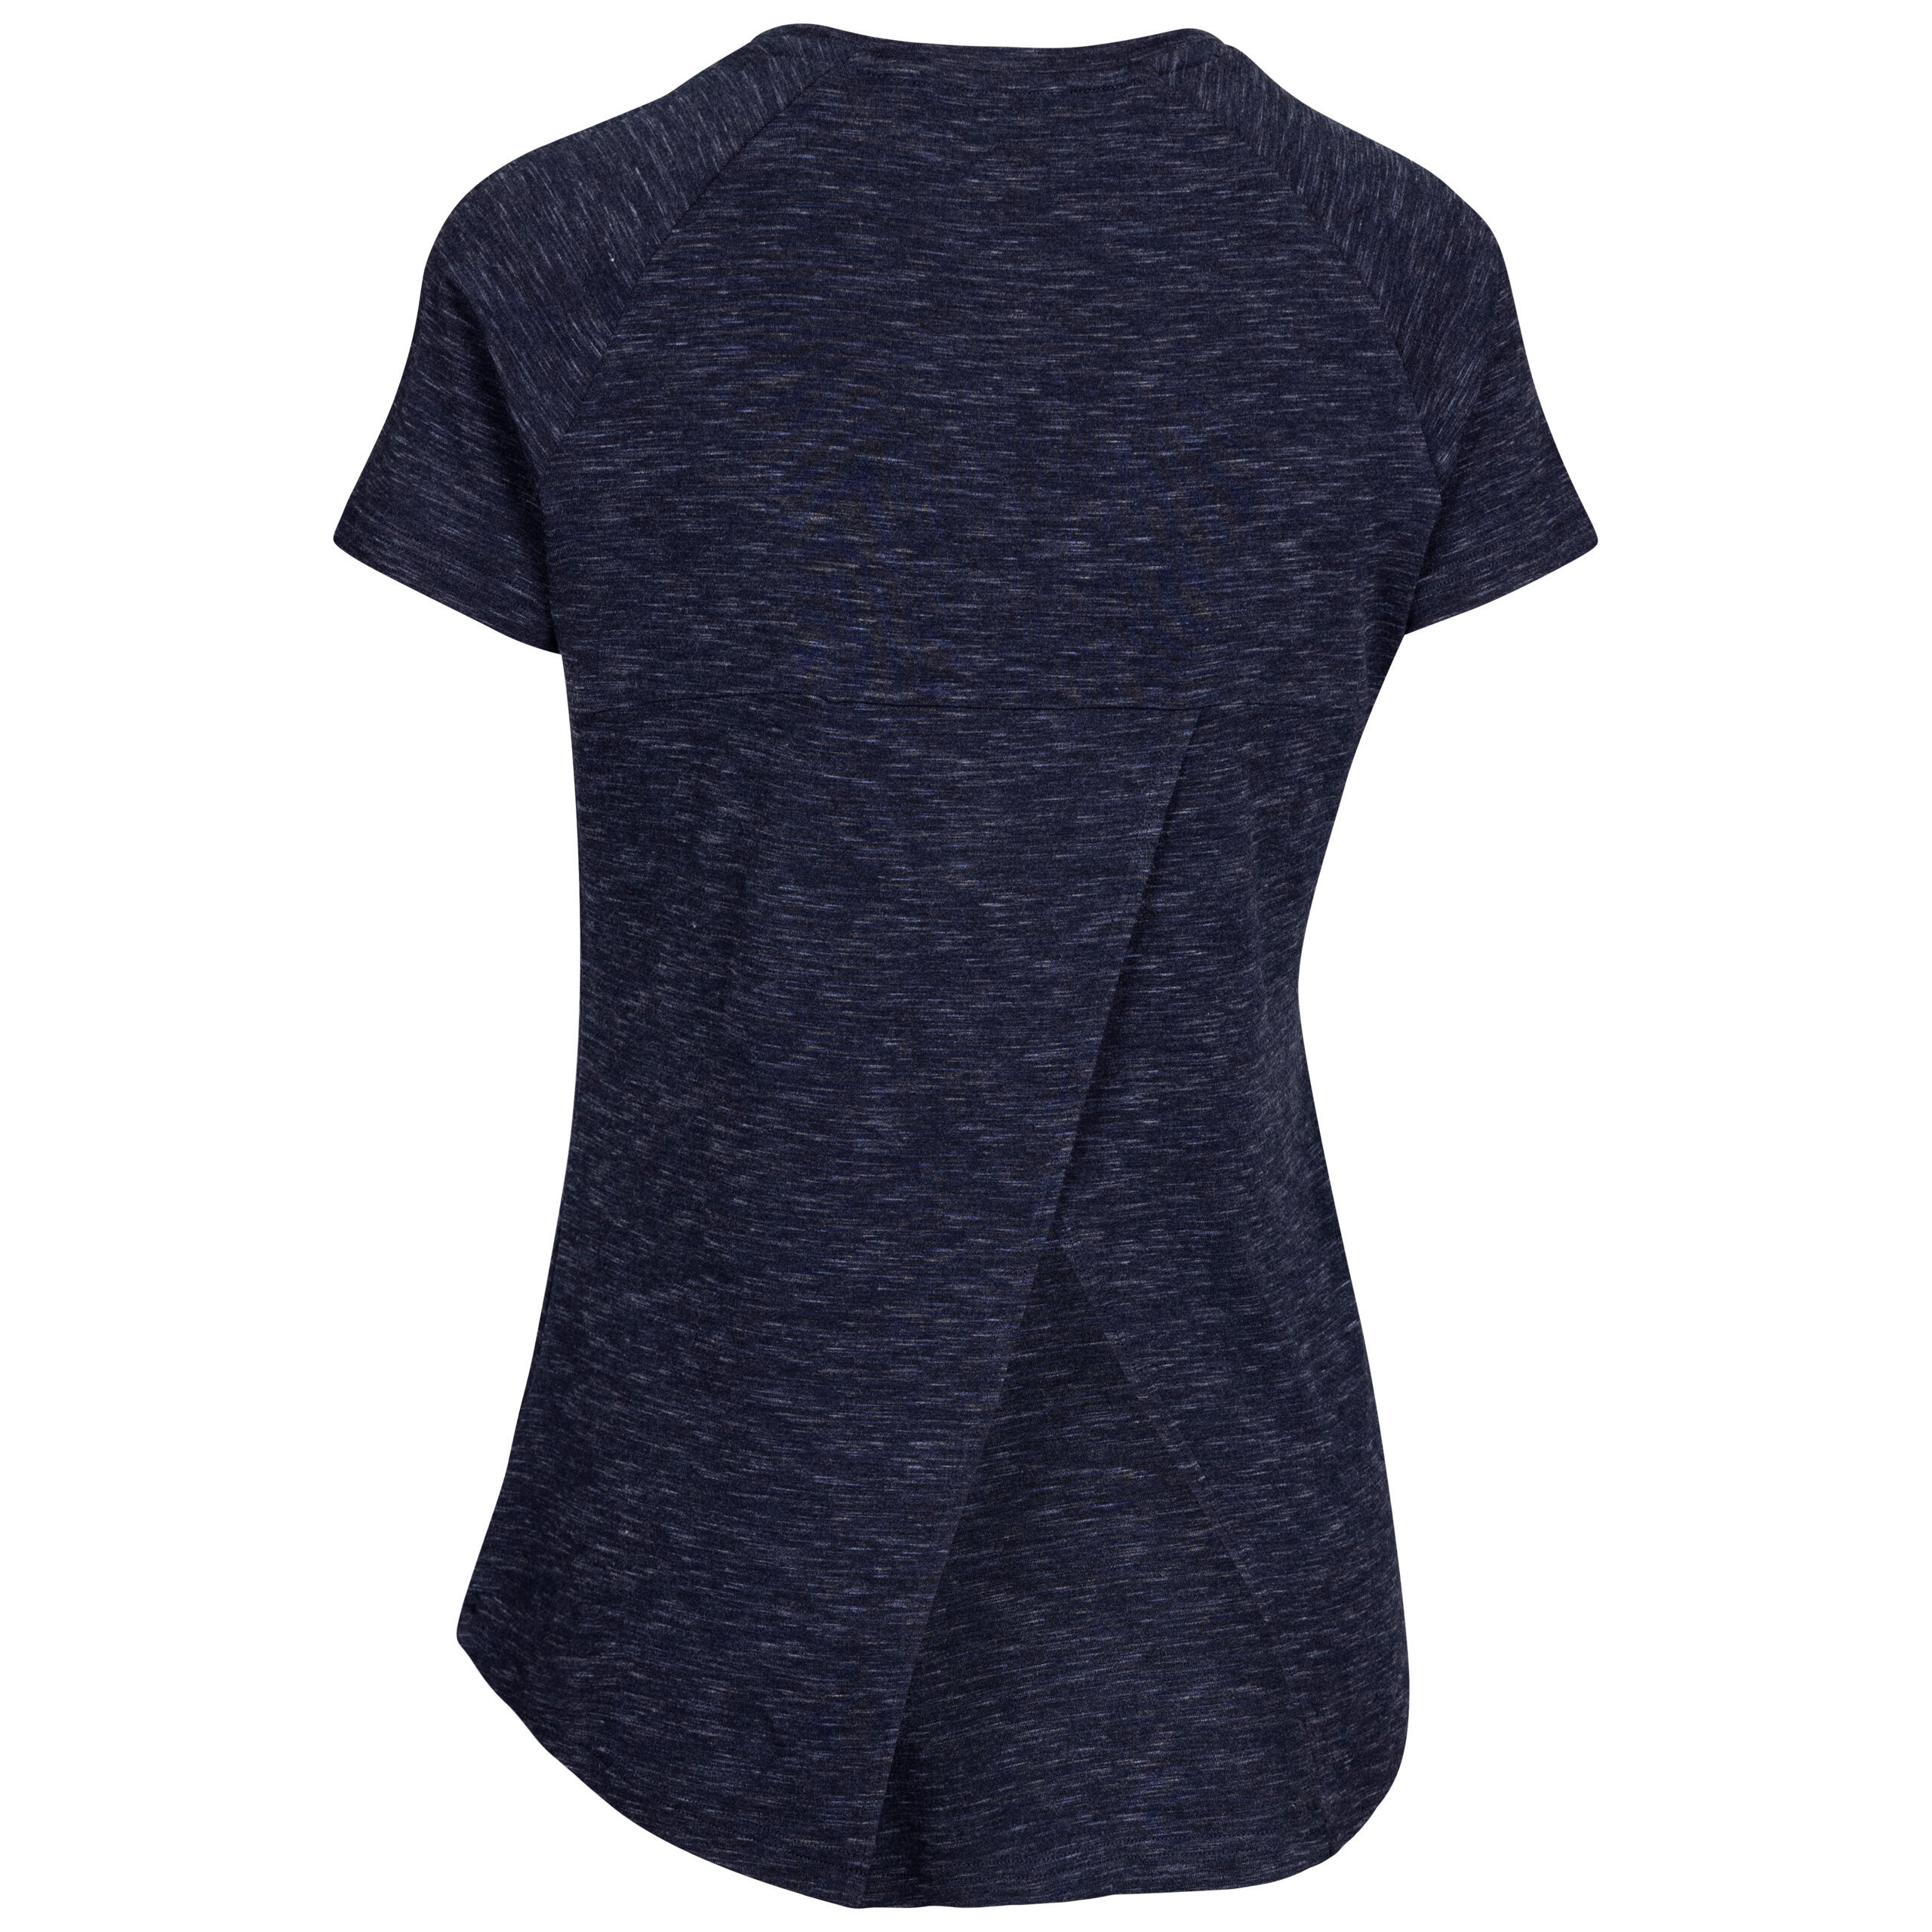 Womens Raglan T-Shirt Short Sleeved Activewear Top Quick Dry Katie 2/2